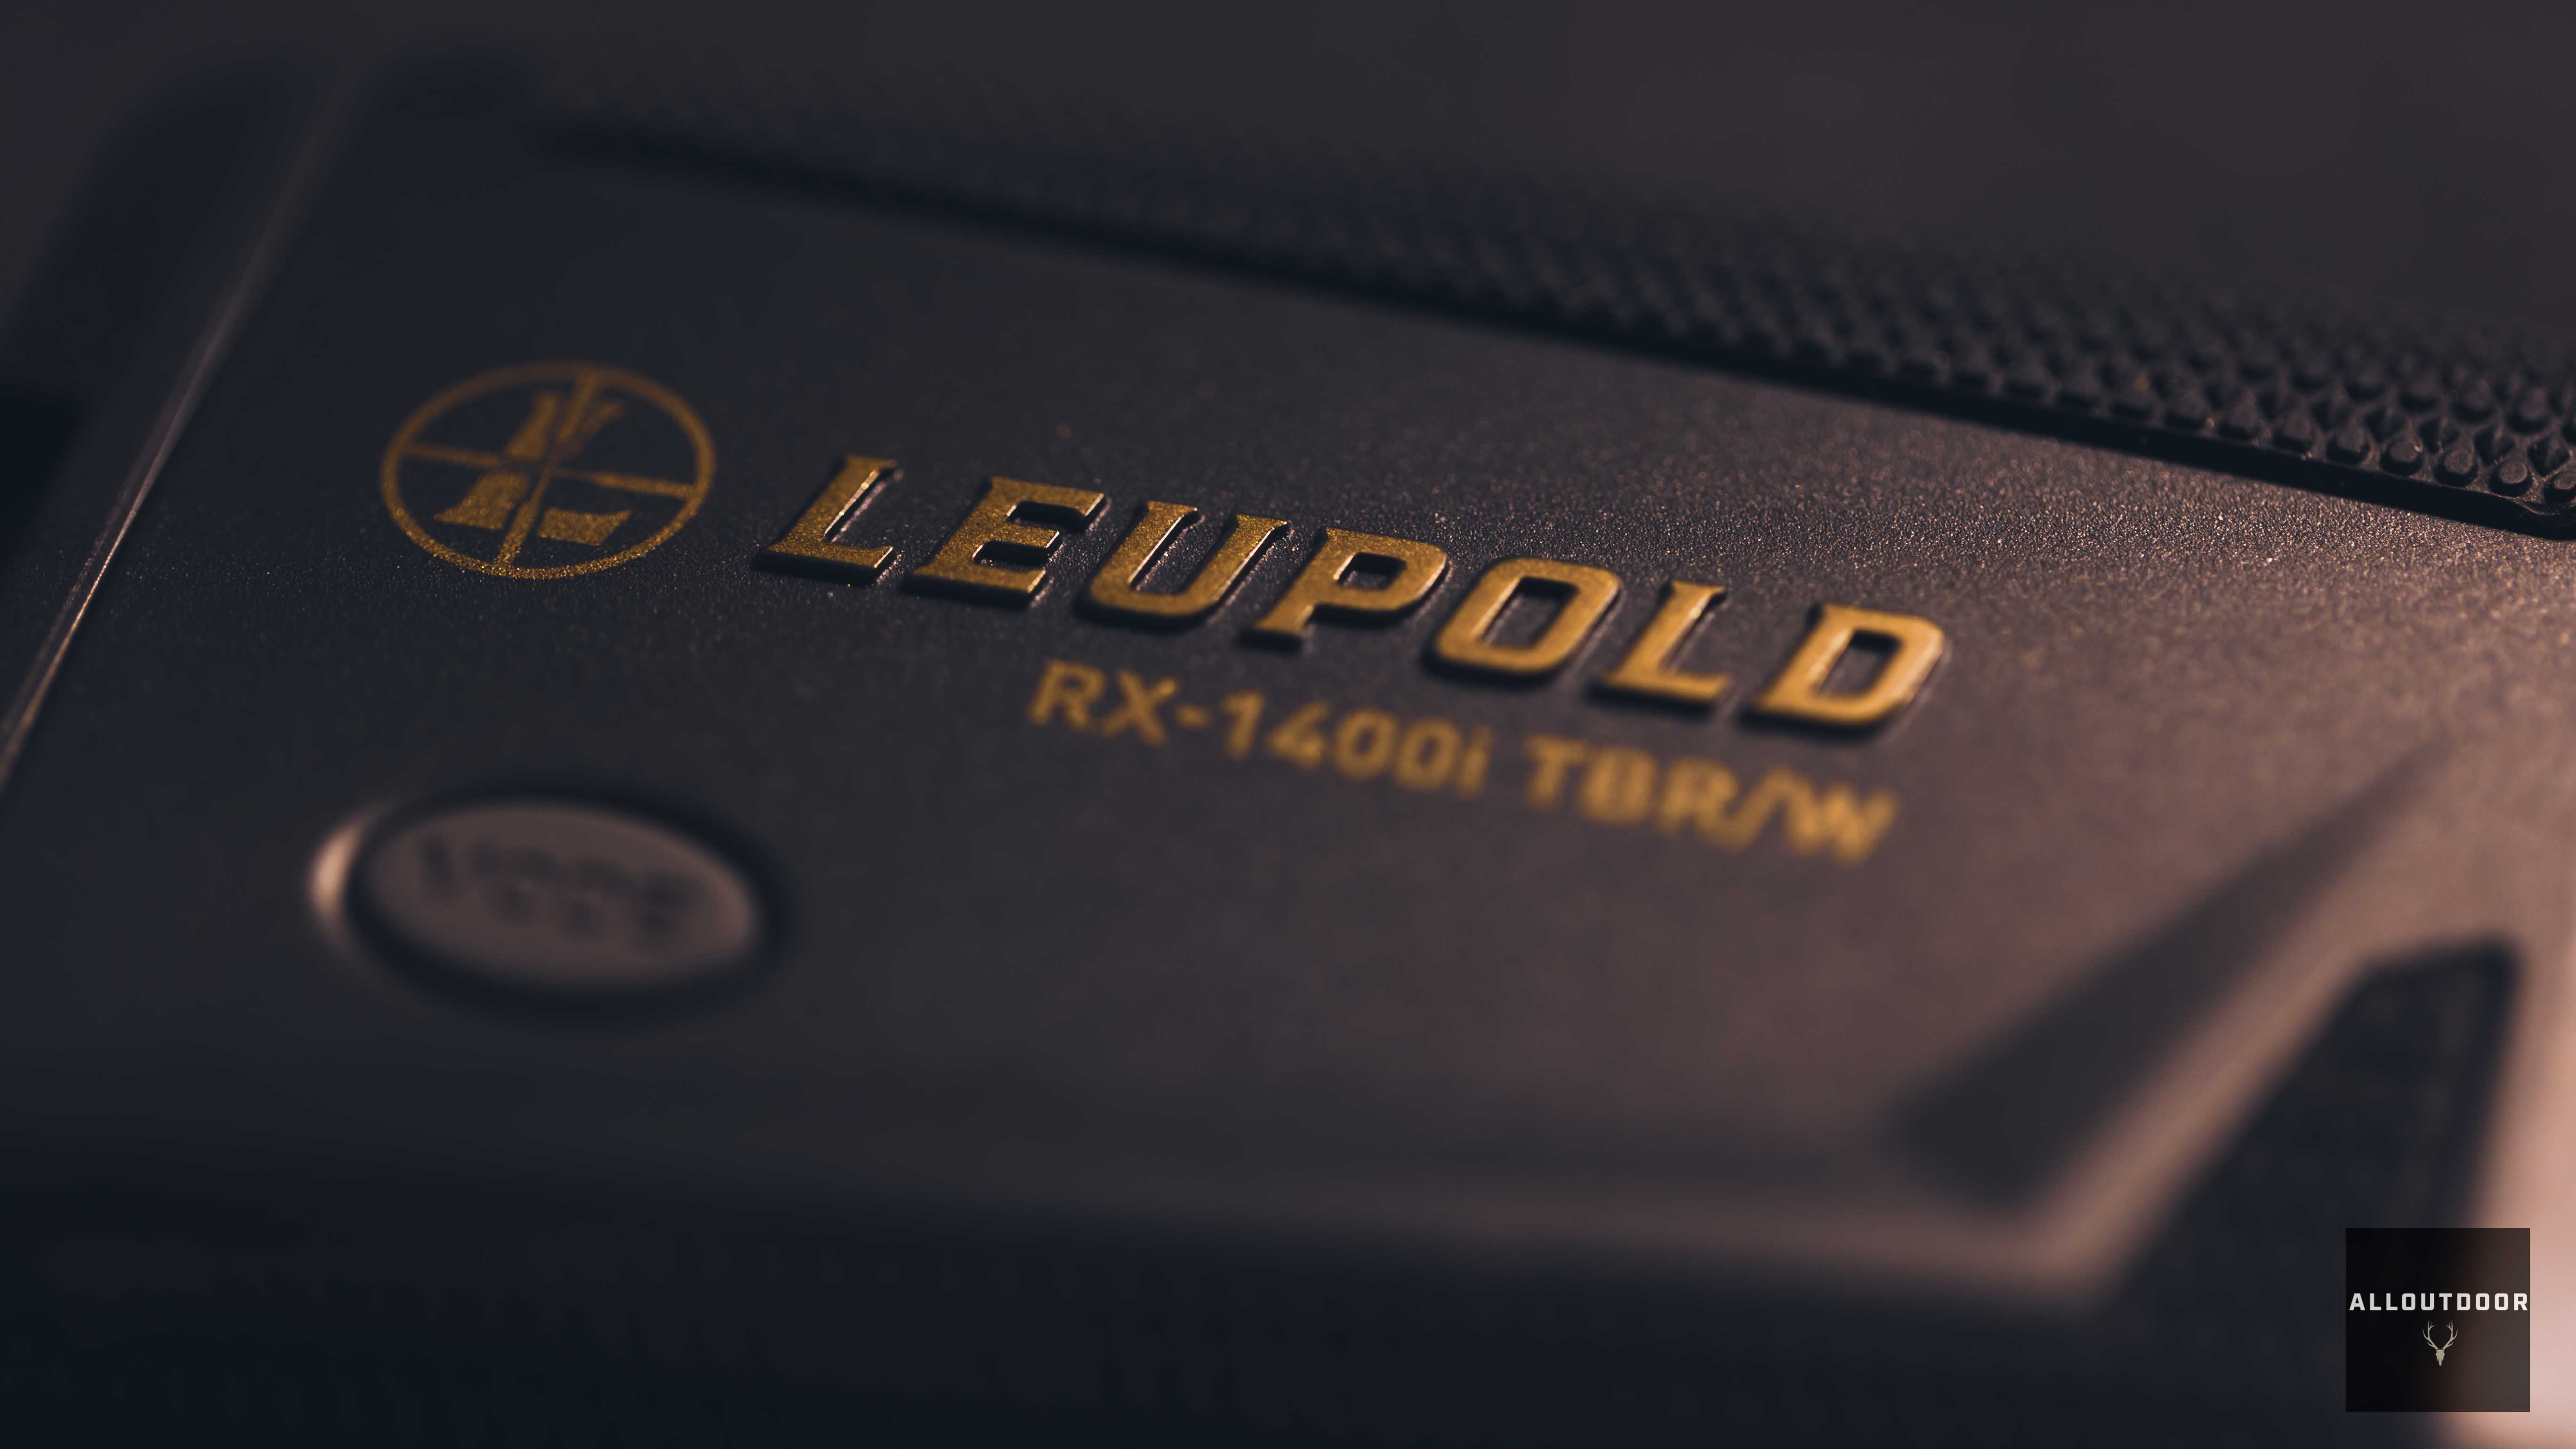 AllOutdoor Review - Leupold RX-1400i TBR/W Gen 2 Laser Rangefinder